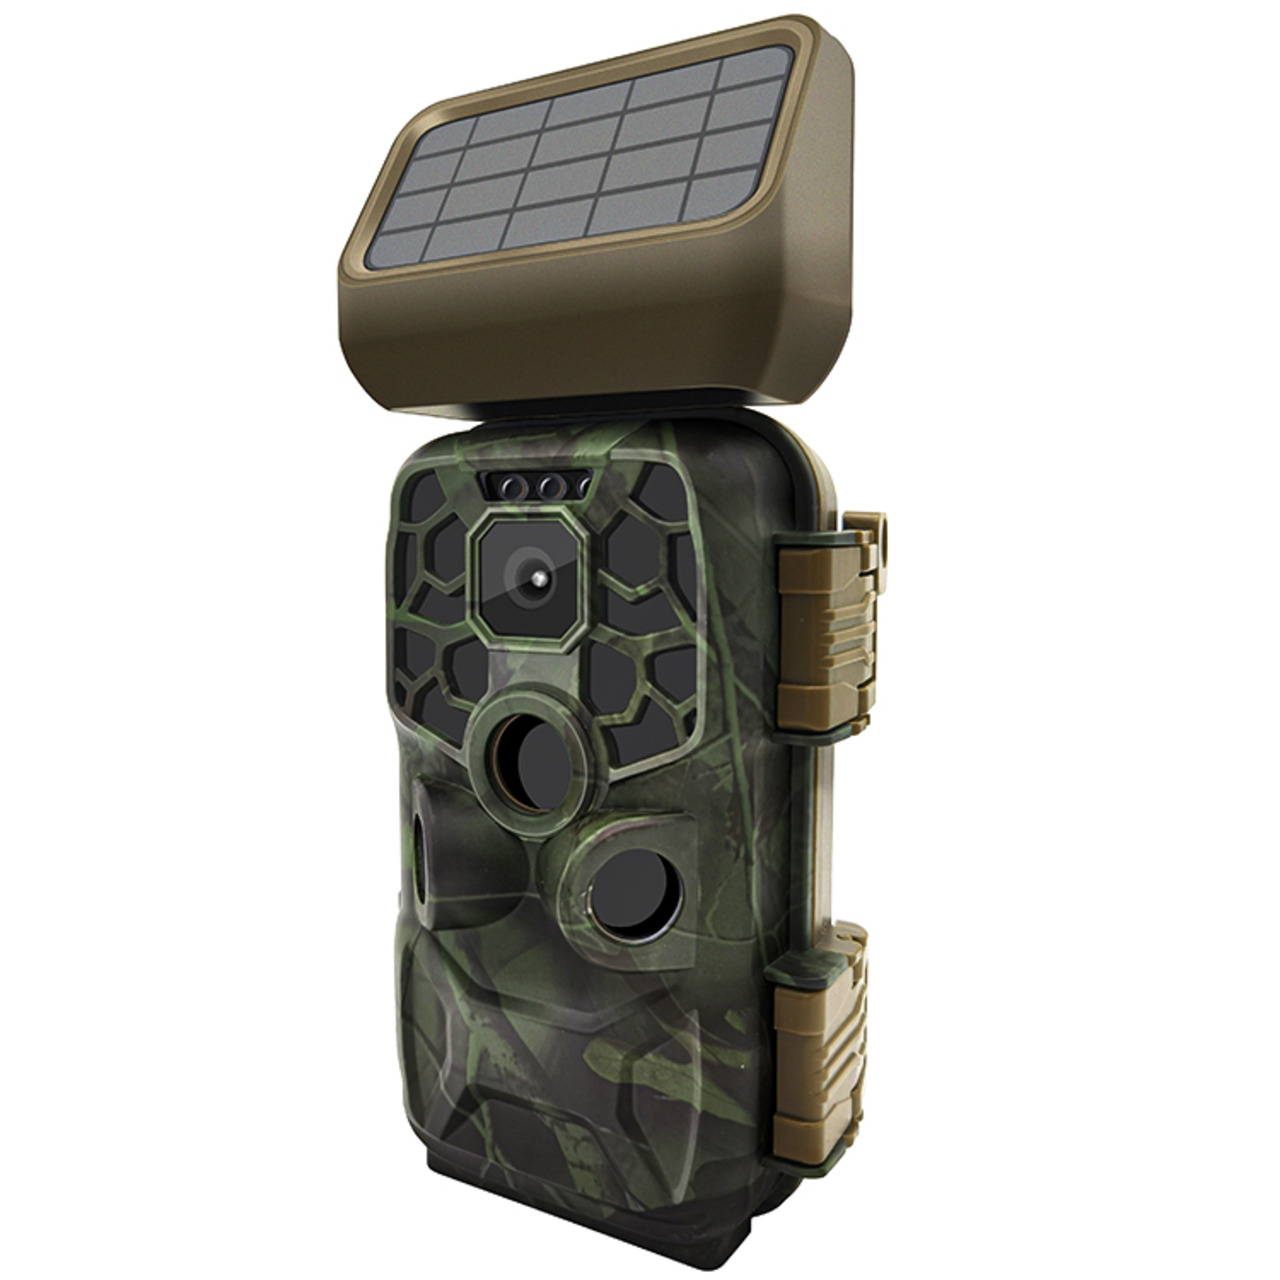 Braun Solar Fotofalle - Wildkamera Scouting Cam BLACK400 WiFi- 24 MP- IP56- Auslösezeit 0-4s 